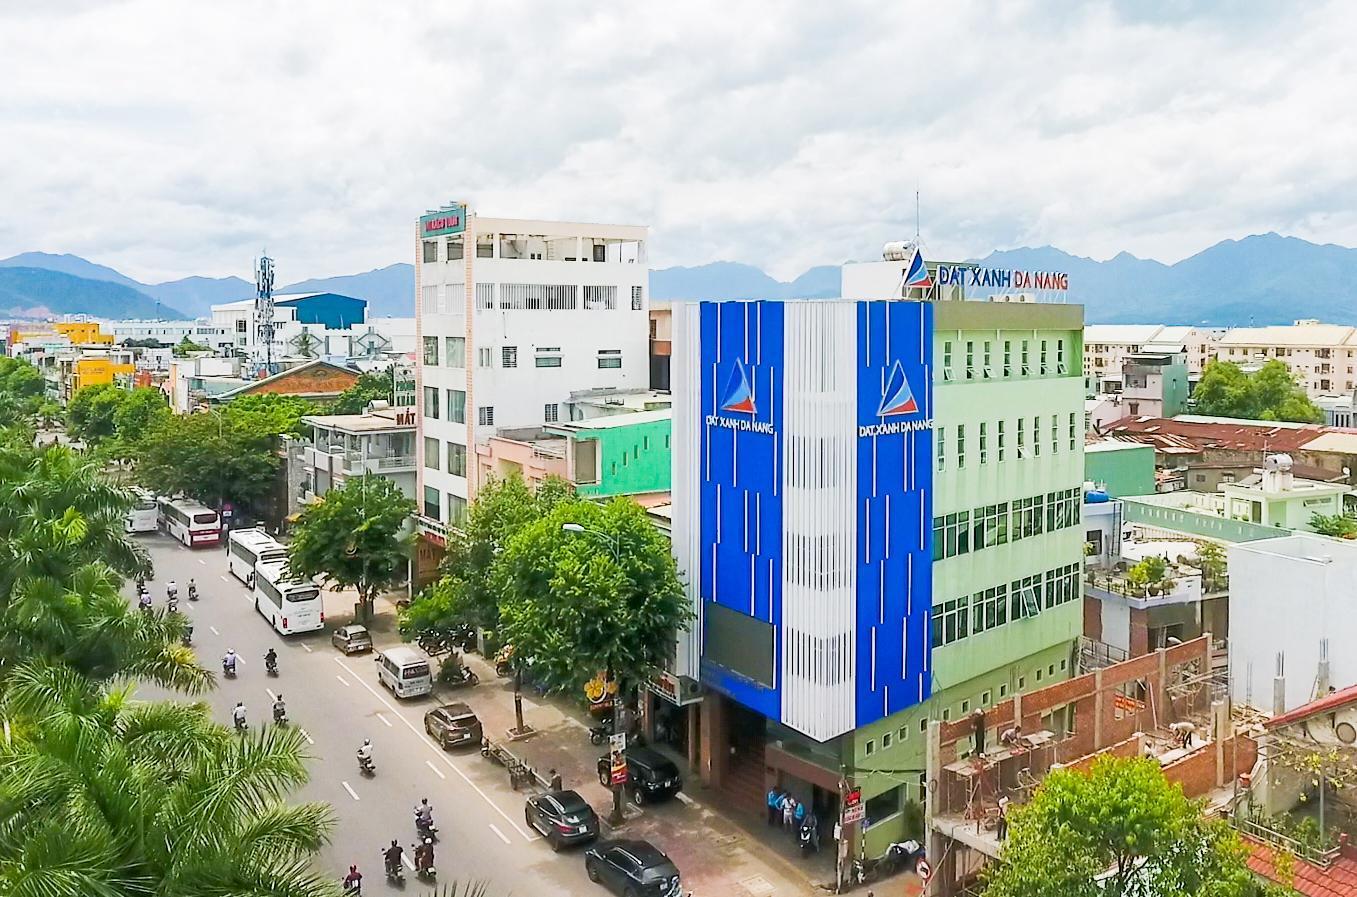 ĐIỀU GÌ TẠO NÊN SỰ KHÁC BIỆT TRONG MÔ HÌNH VÀ CHÍNH SÁCH CỦA ĐẤT XANH ĐÀ NẴNG? - Viet Nam Smart City